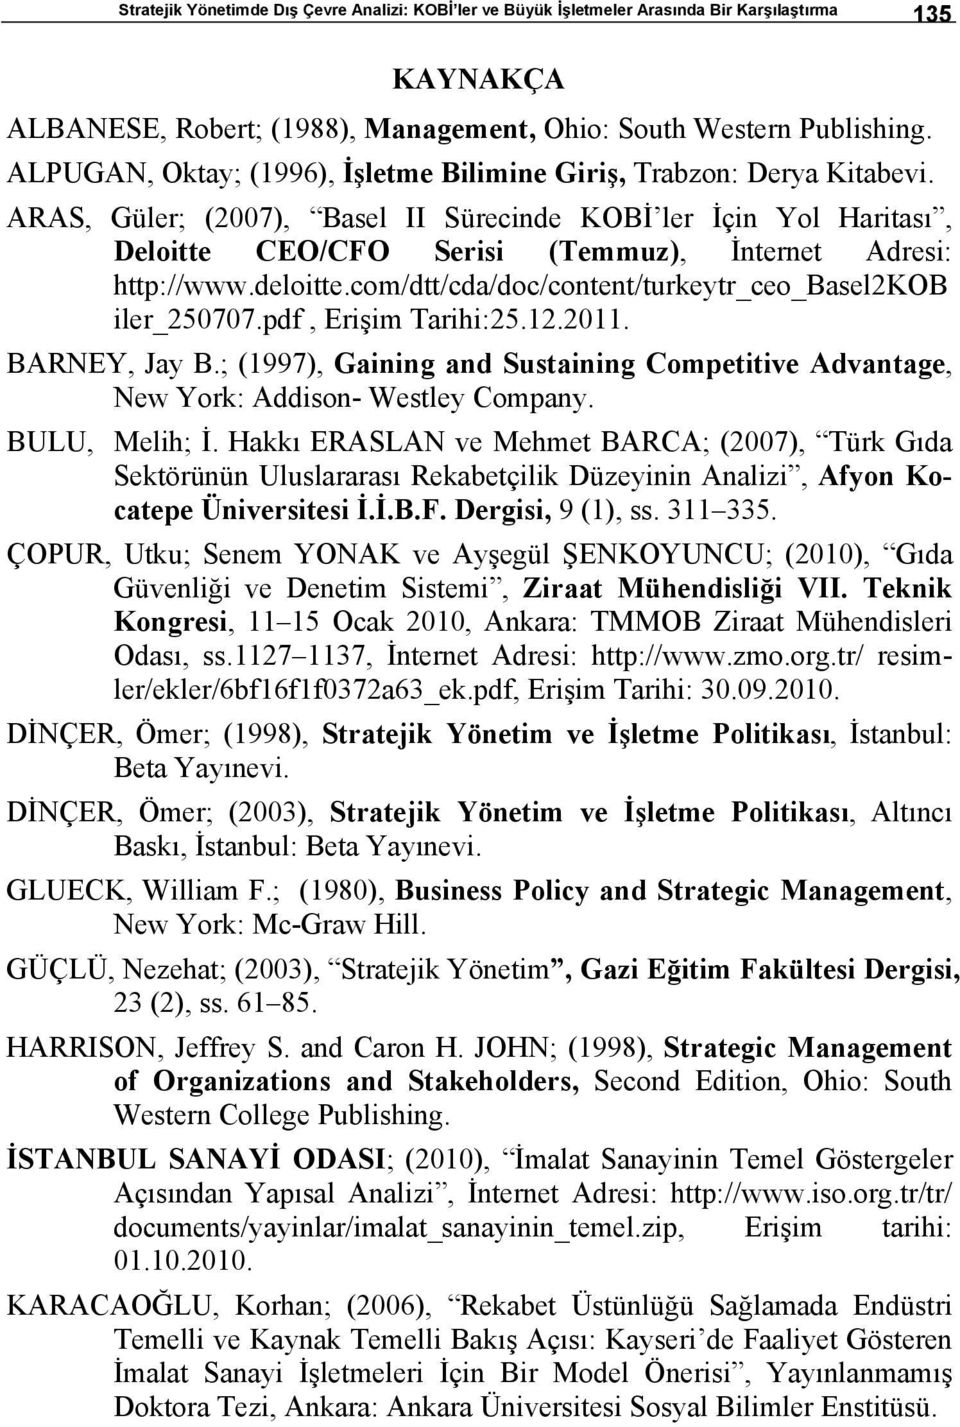 ARAS, Güler; (2007), Basel II Sürecinde KOBİ ler İçin Yol Haritası, Deloitte CEO/CFO Serisi (Temmuz), İnternet Adresi: http://www.deloitte.com/dtt/cda/doc/content/turkeytr_ceo_basel2kob iler_250707.